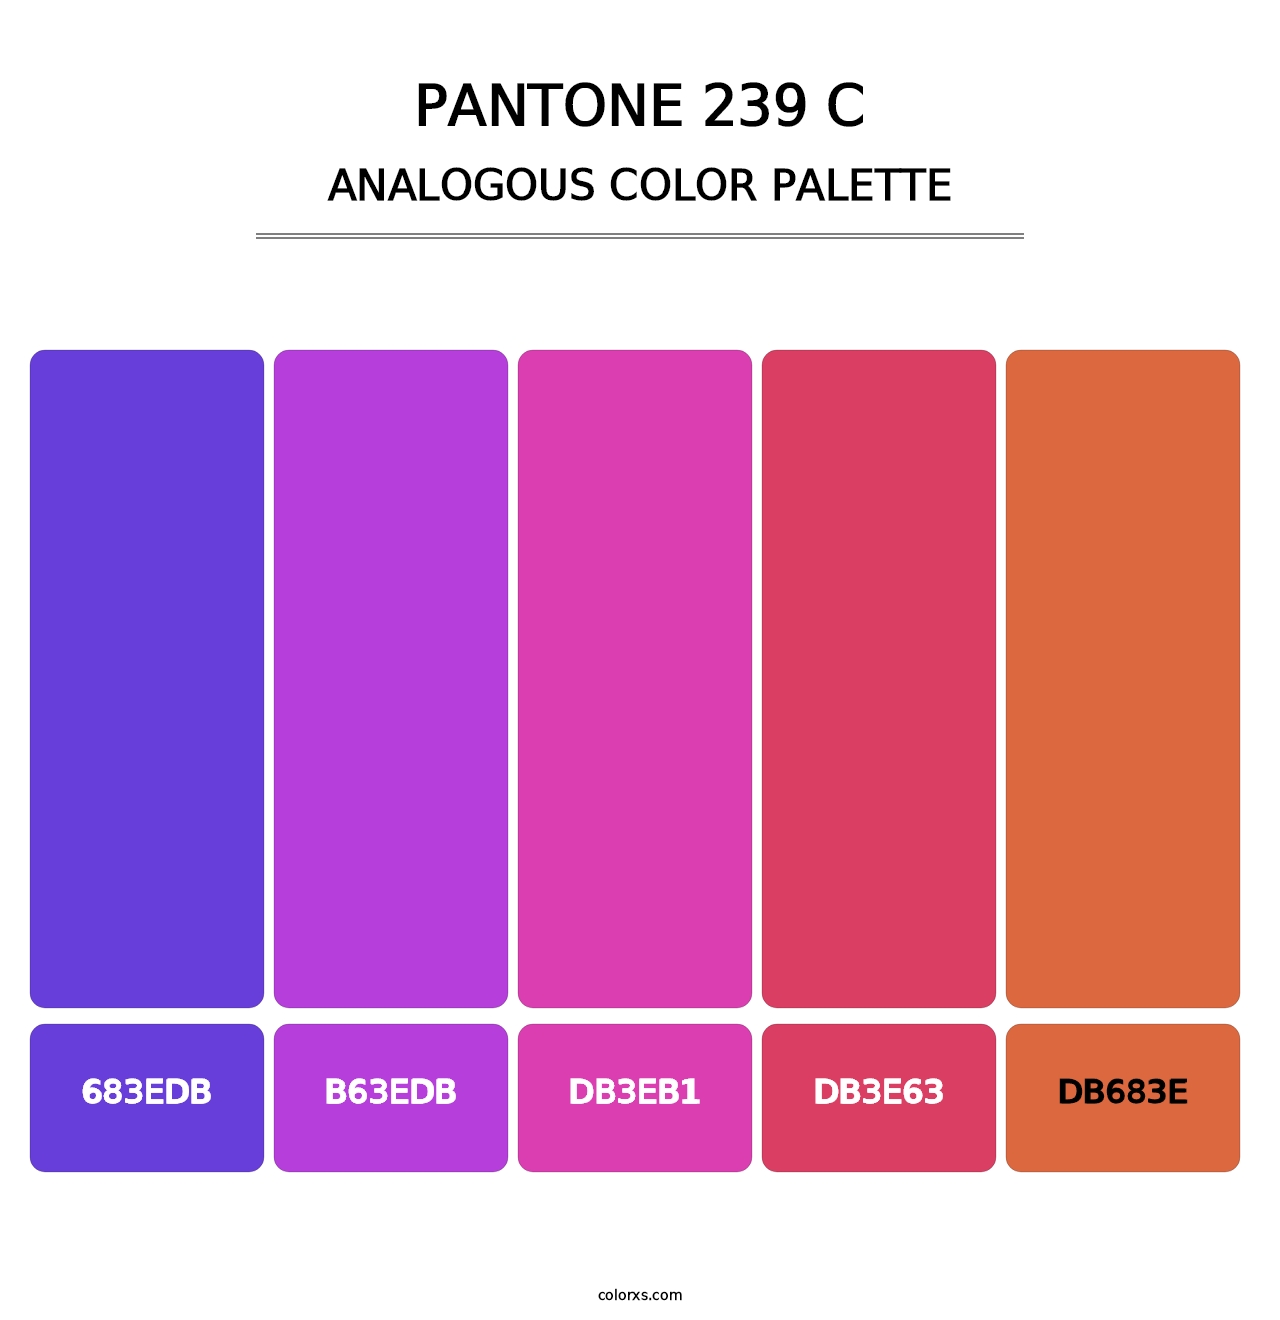 PANTONE 239 C - Analogous Color Palette